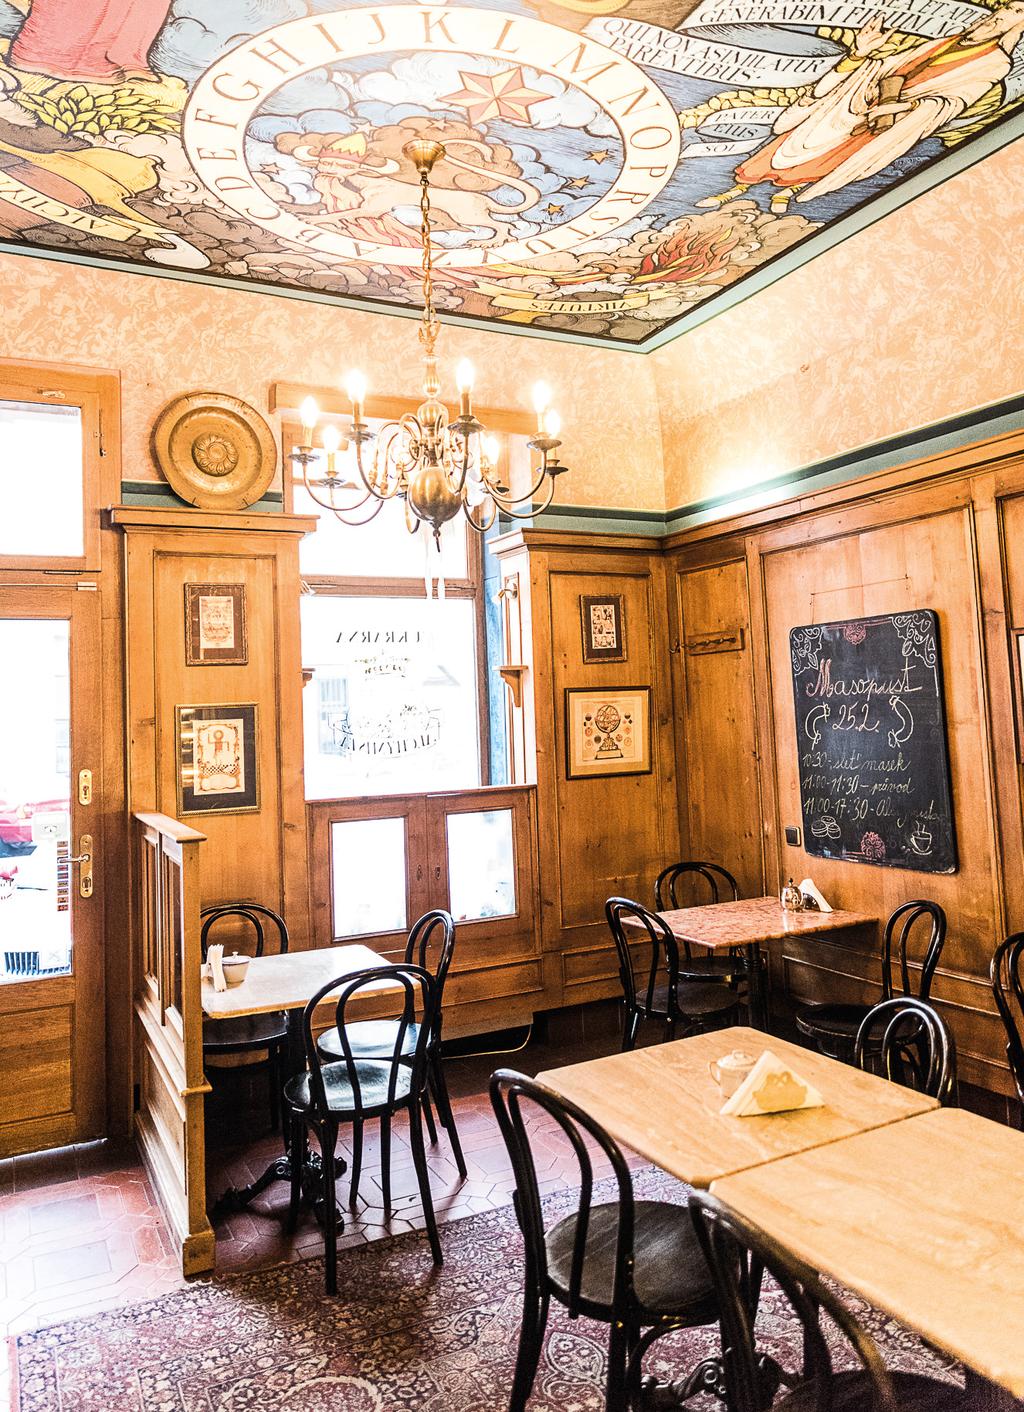 obchody i laciné bazary. Holešovice mají svou čtyřnohou celebritu. 04 05 Holešovický Montmartre skvost ve vnitrobloku. Nejkrásnější vintage kavárnu najdete schovanou mezi růžovými keři.